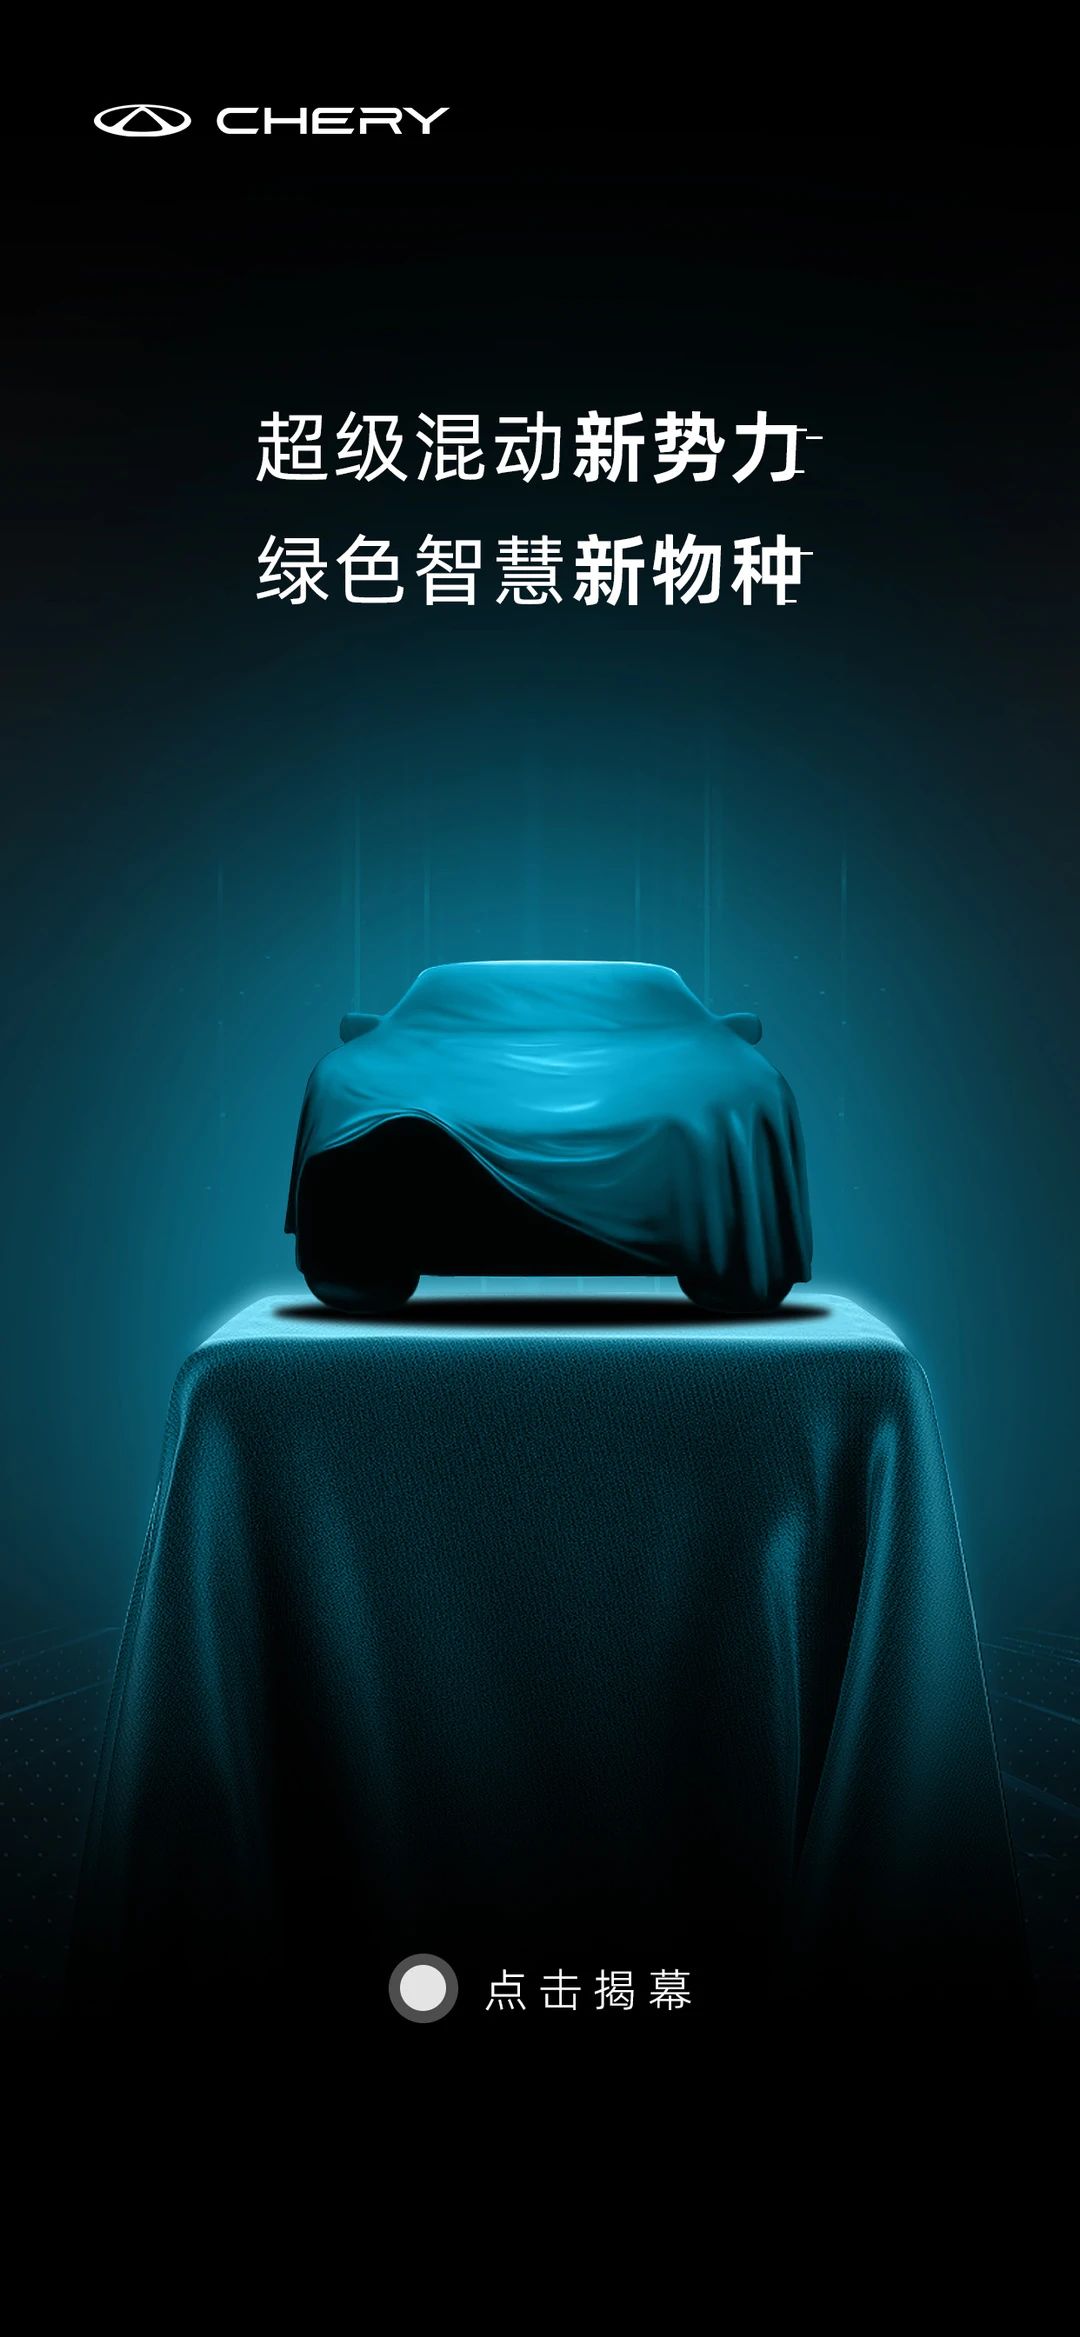 奇瑞发布全新混动SUV瑞虎7 PLUS 新能源